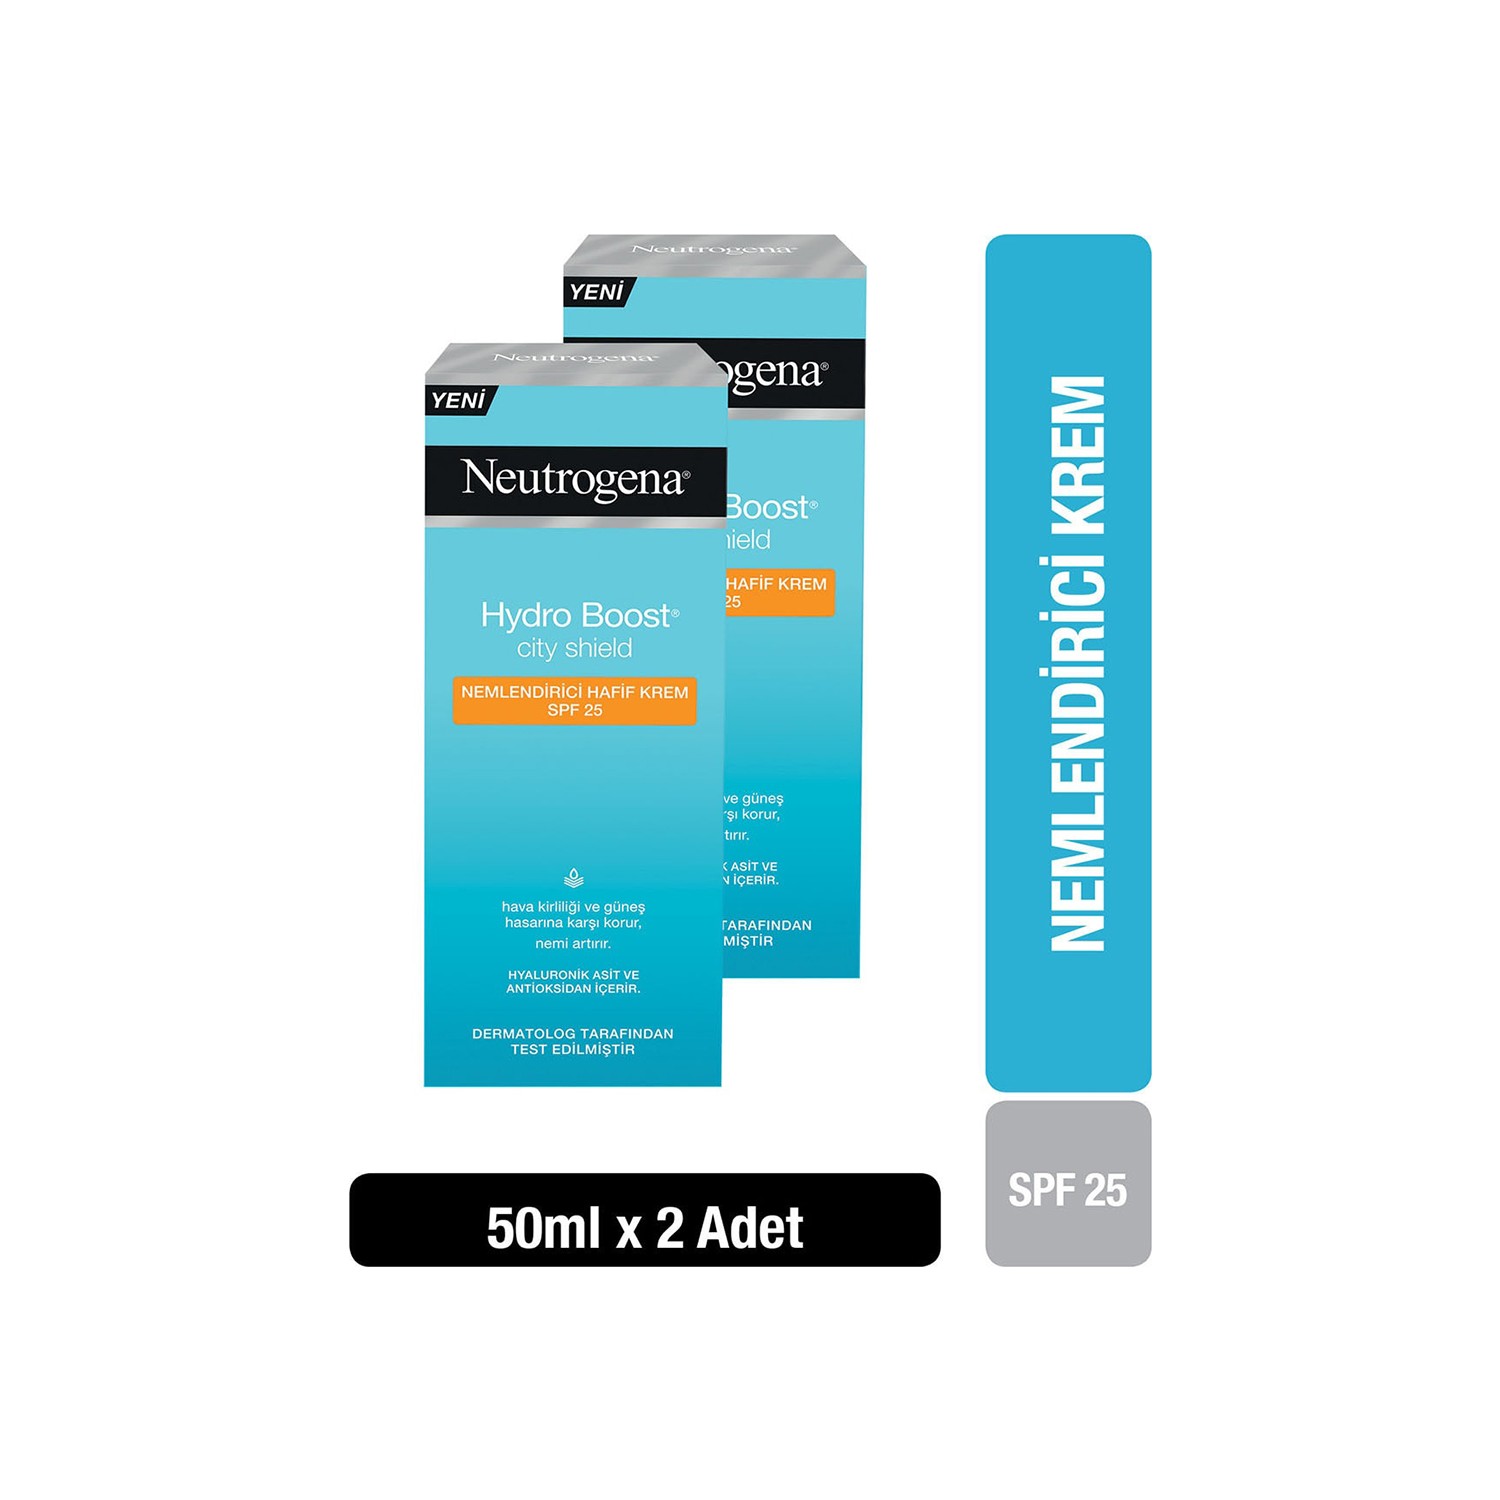 Крем Neutrogena Hydro Boost SPF25 увлажняющий, 2 упаковки по 50 мл